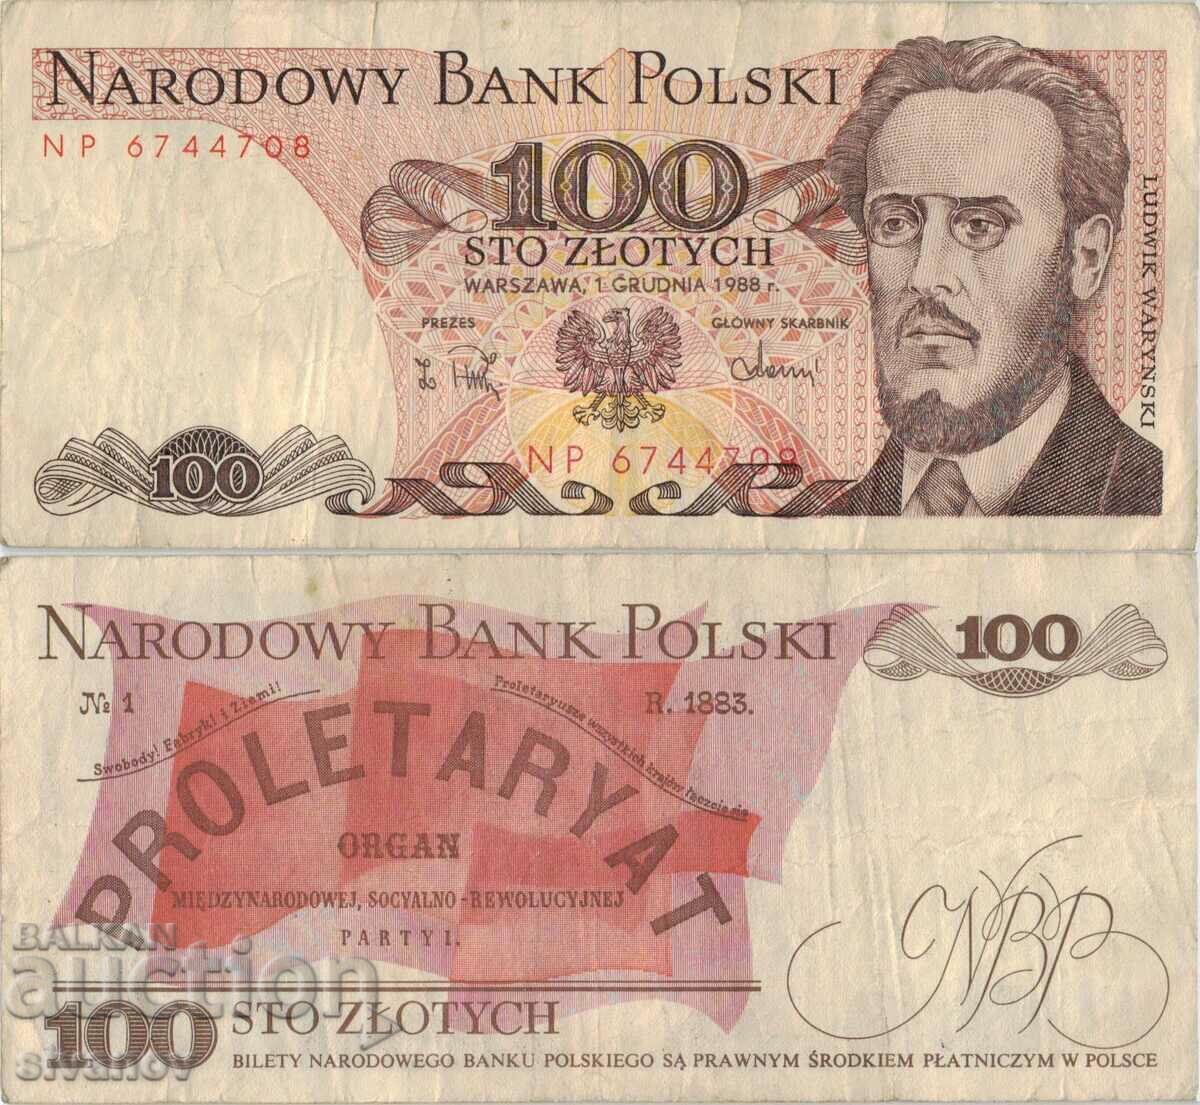 Poland 100 zloty 1988 banknote #5305